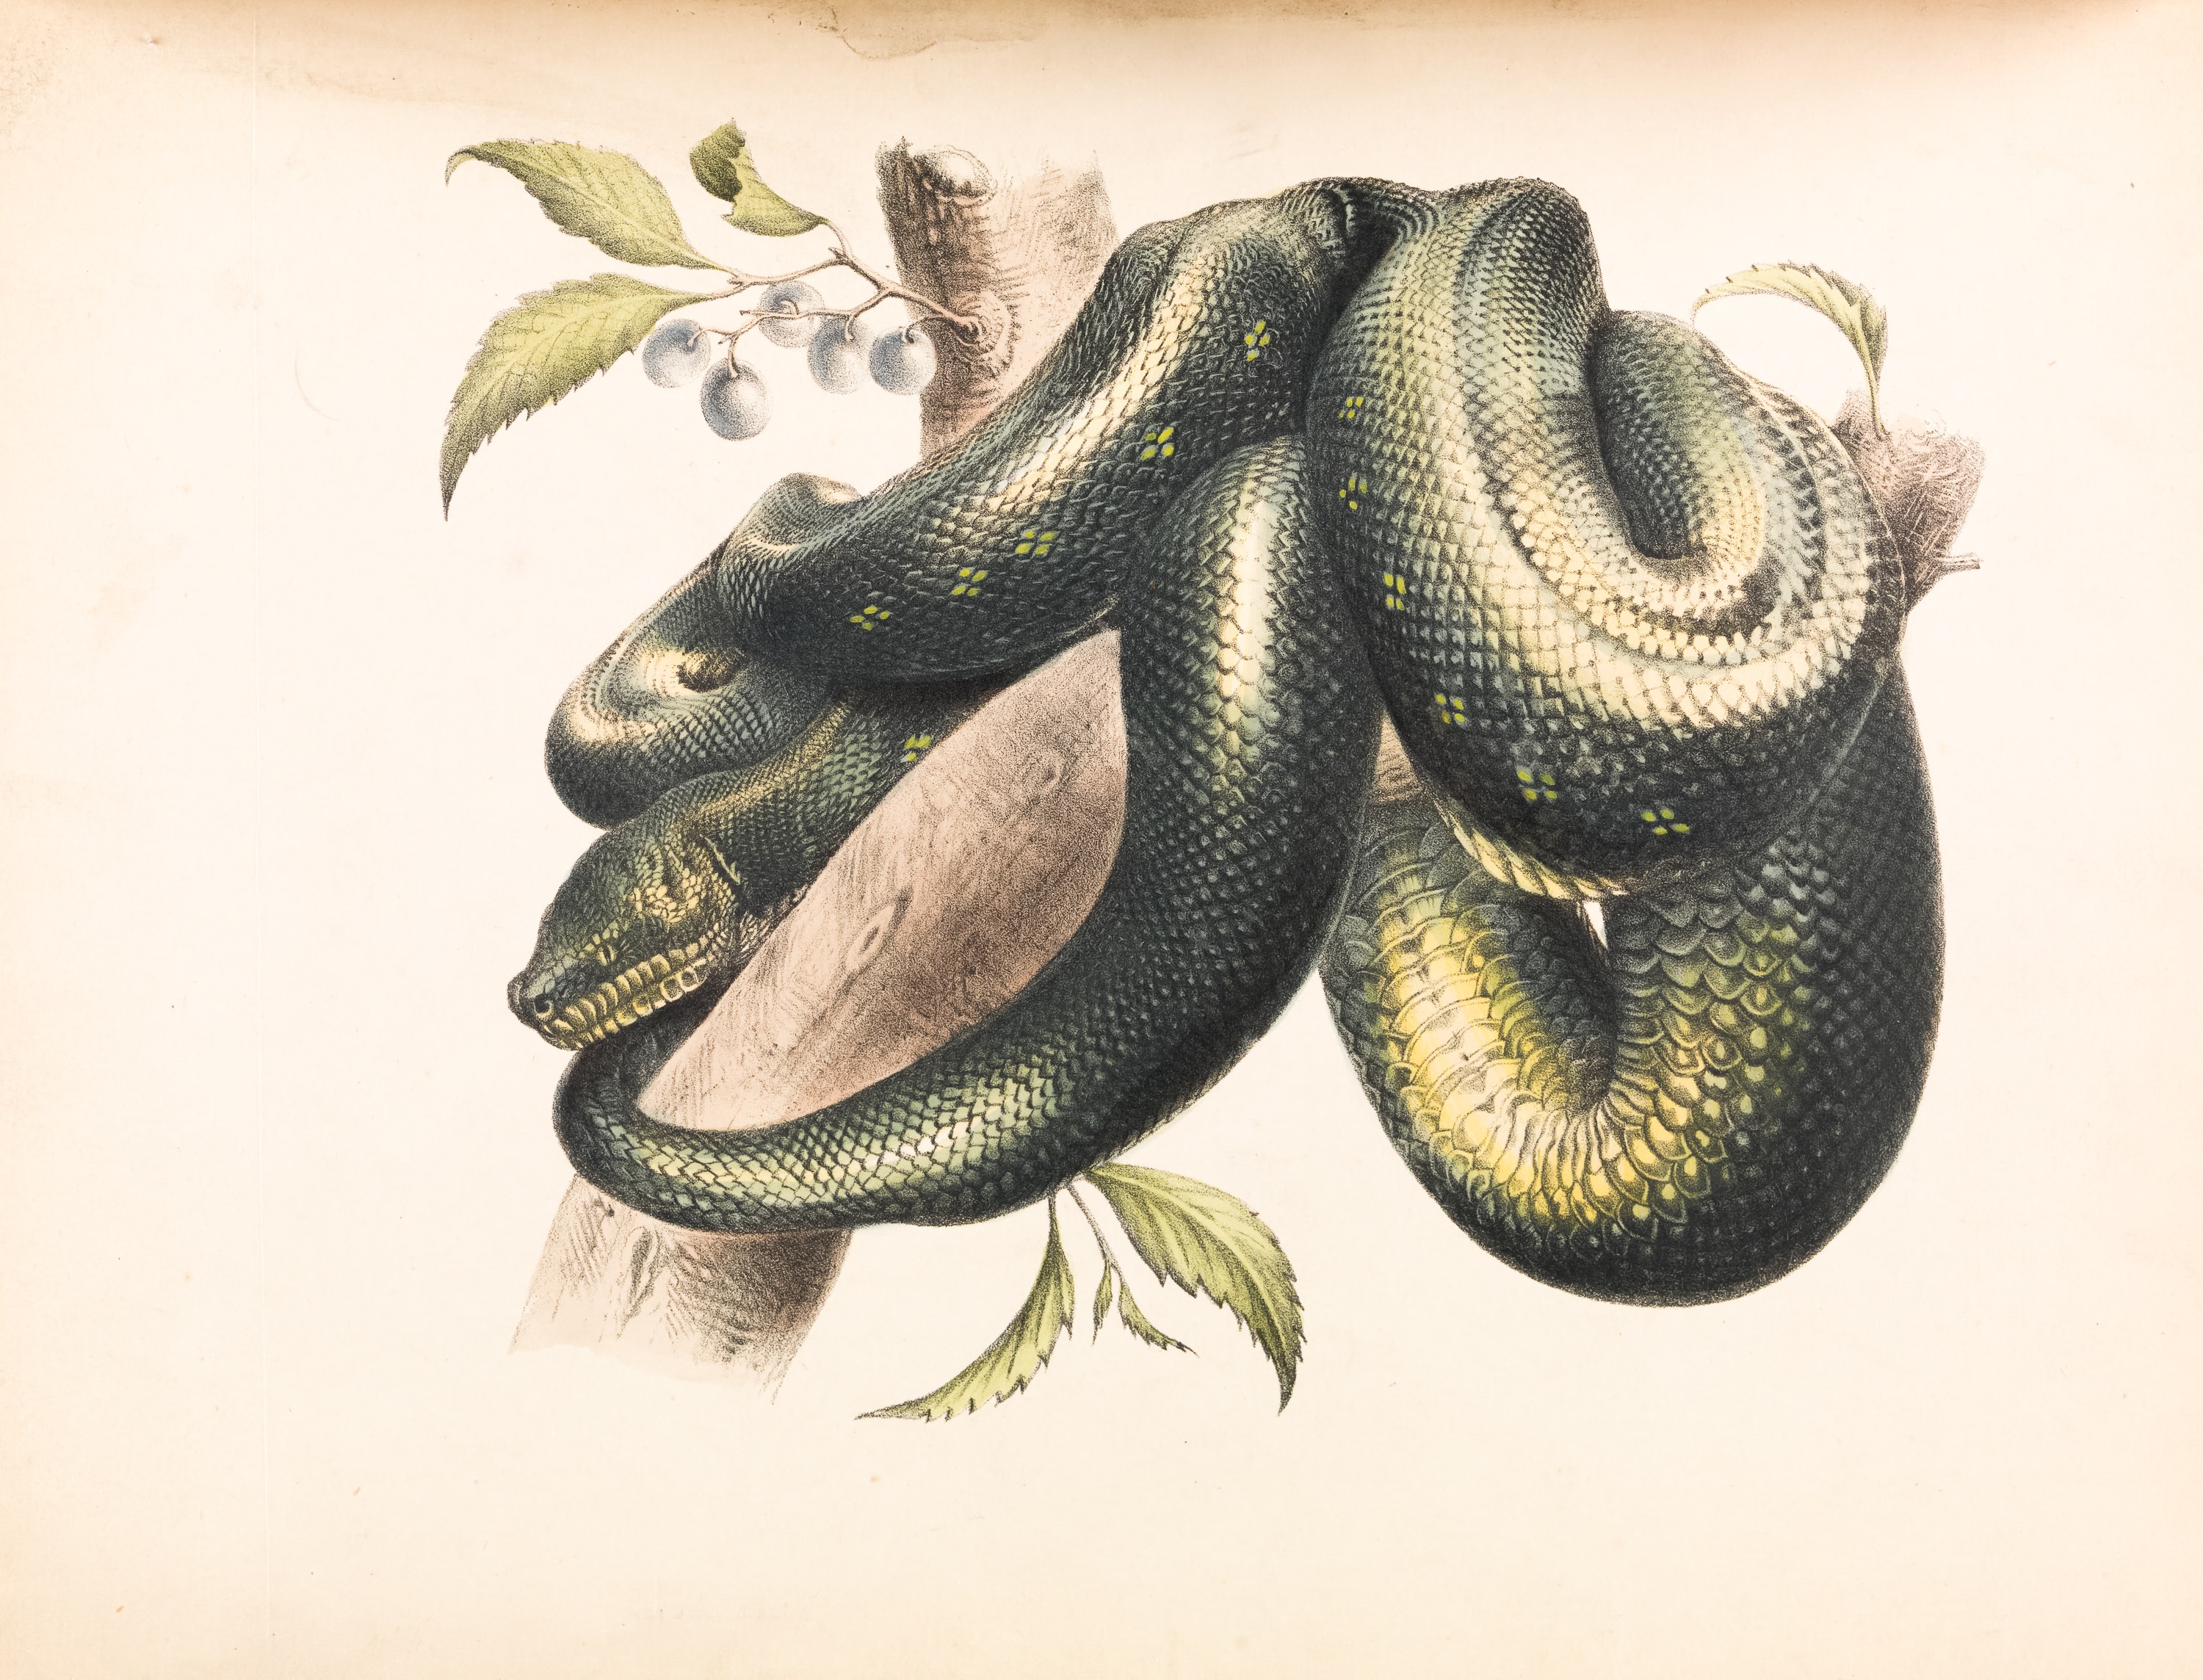 Immagine di un'illustrazione di serpente avvolto intorno a un ramo